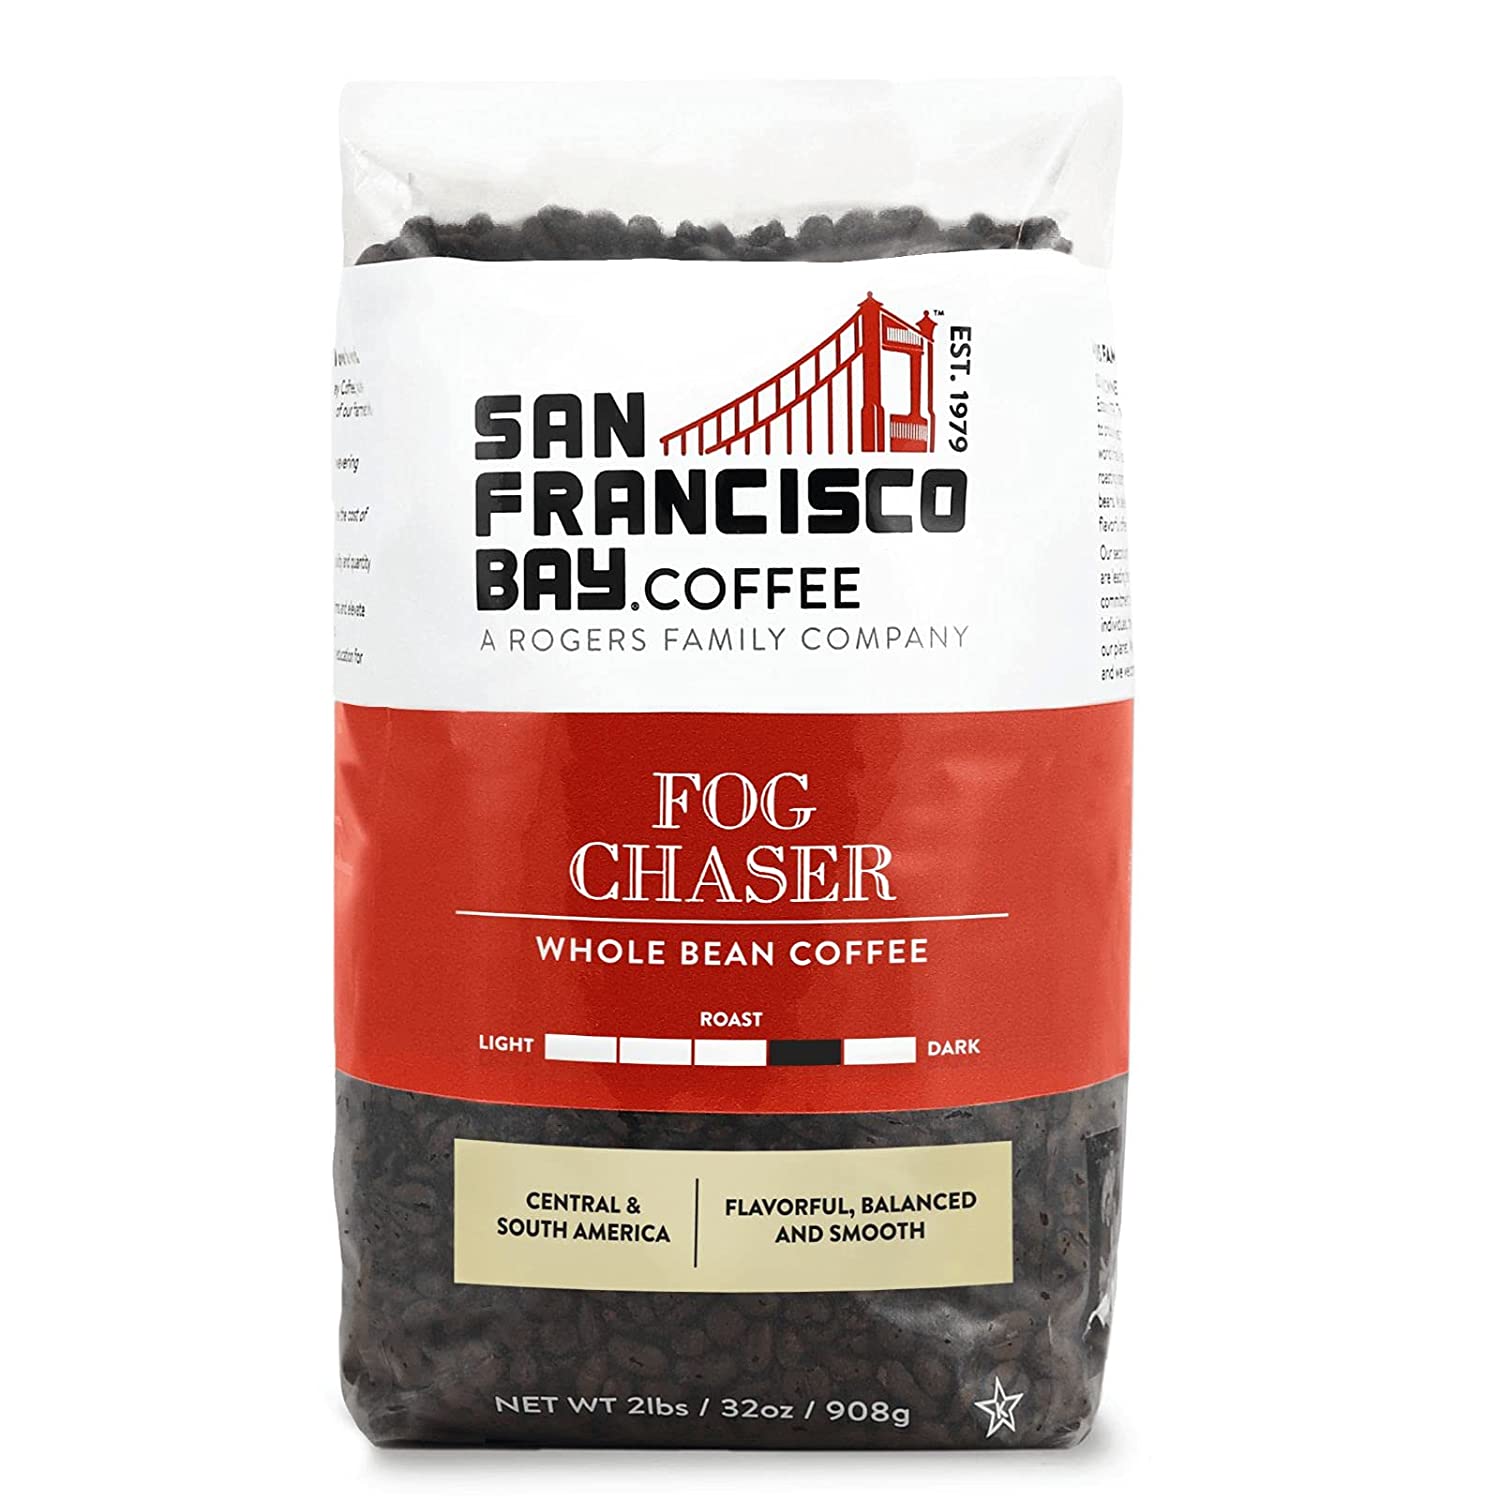 SF-Bay-Coffee-Fog-Chaser